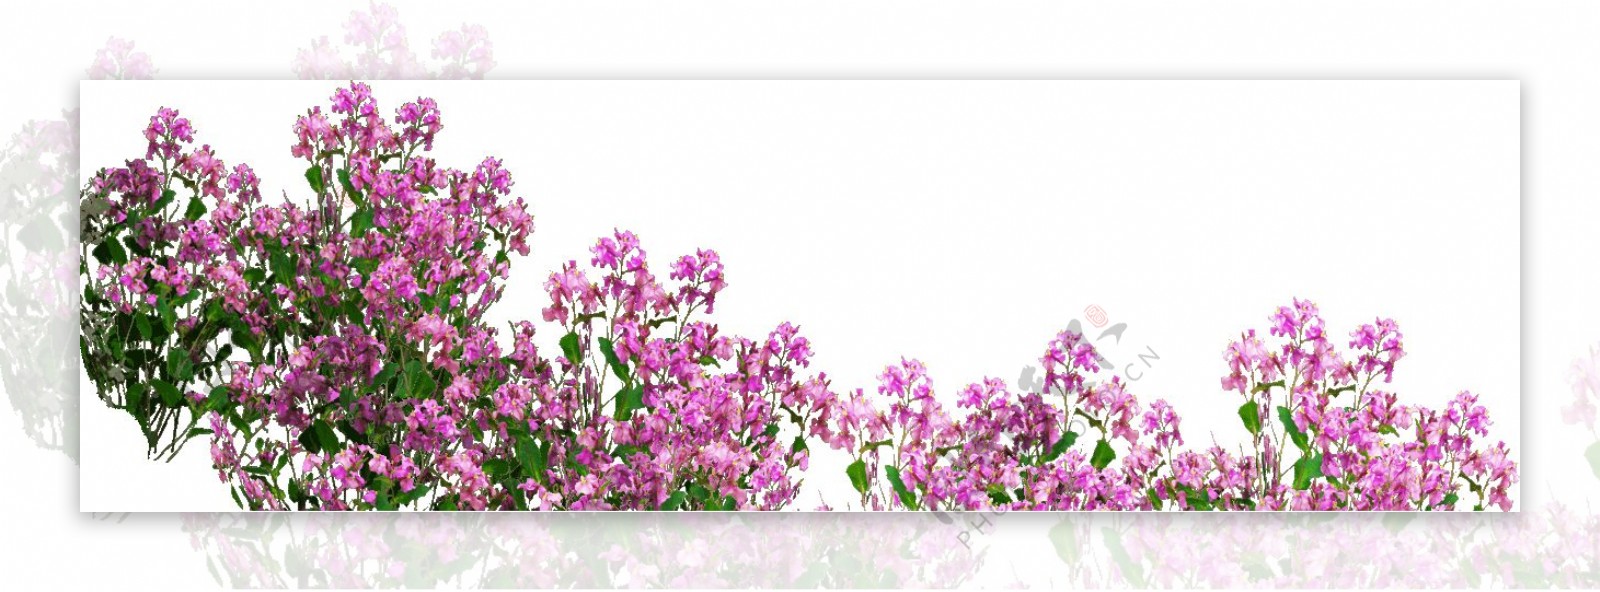 粉色花团簇拥清新png元素